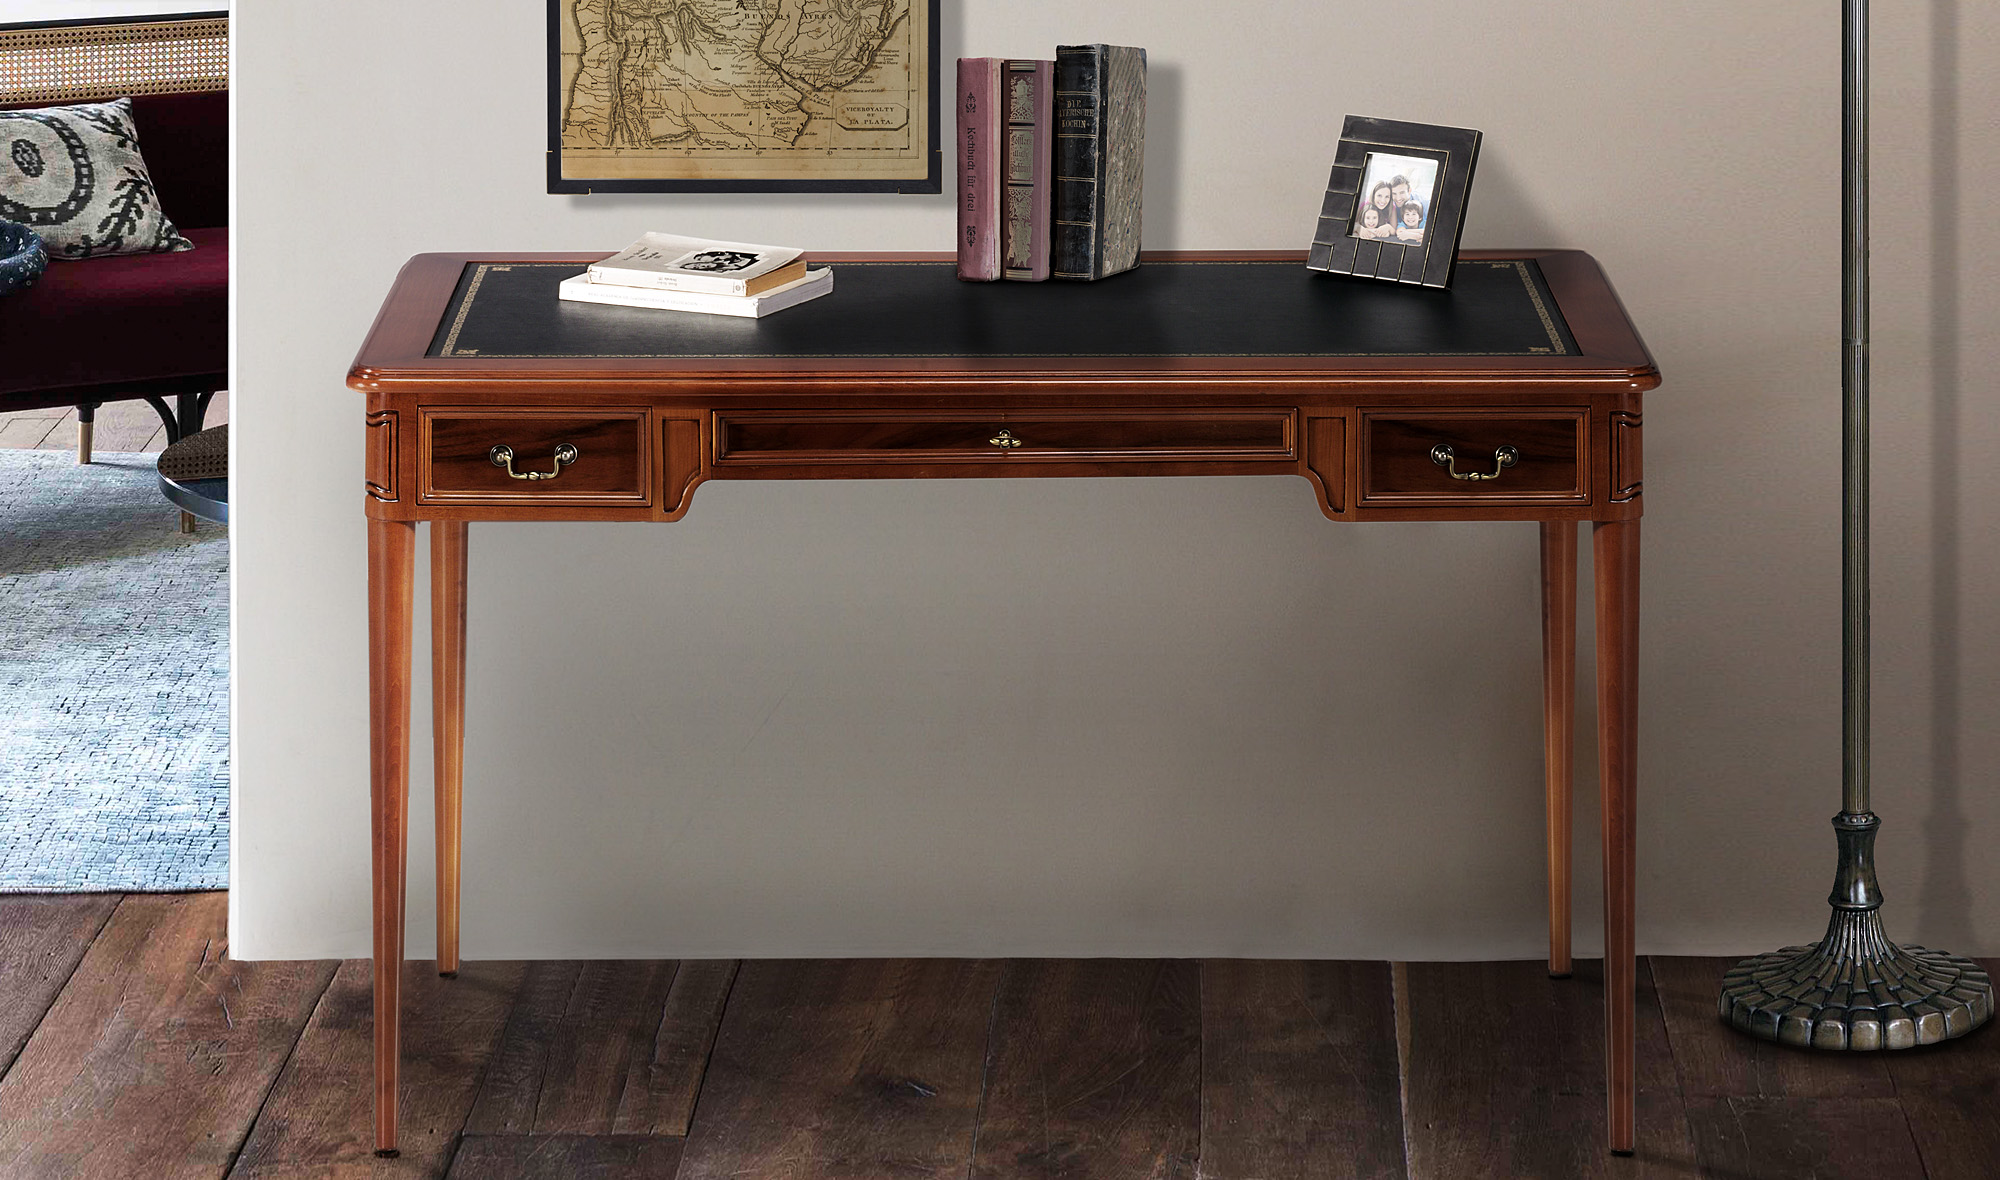 Mesa escritorio de madera ✓ Venta online ✓ PortobelloStreet